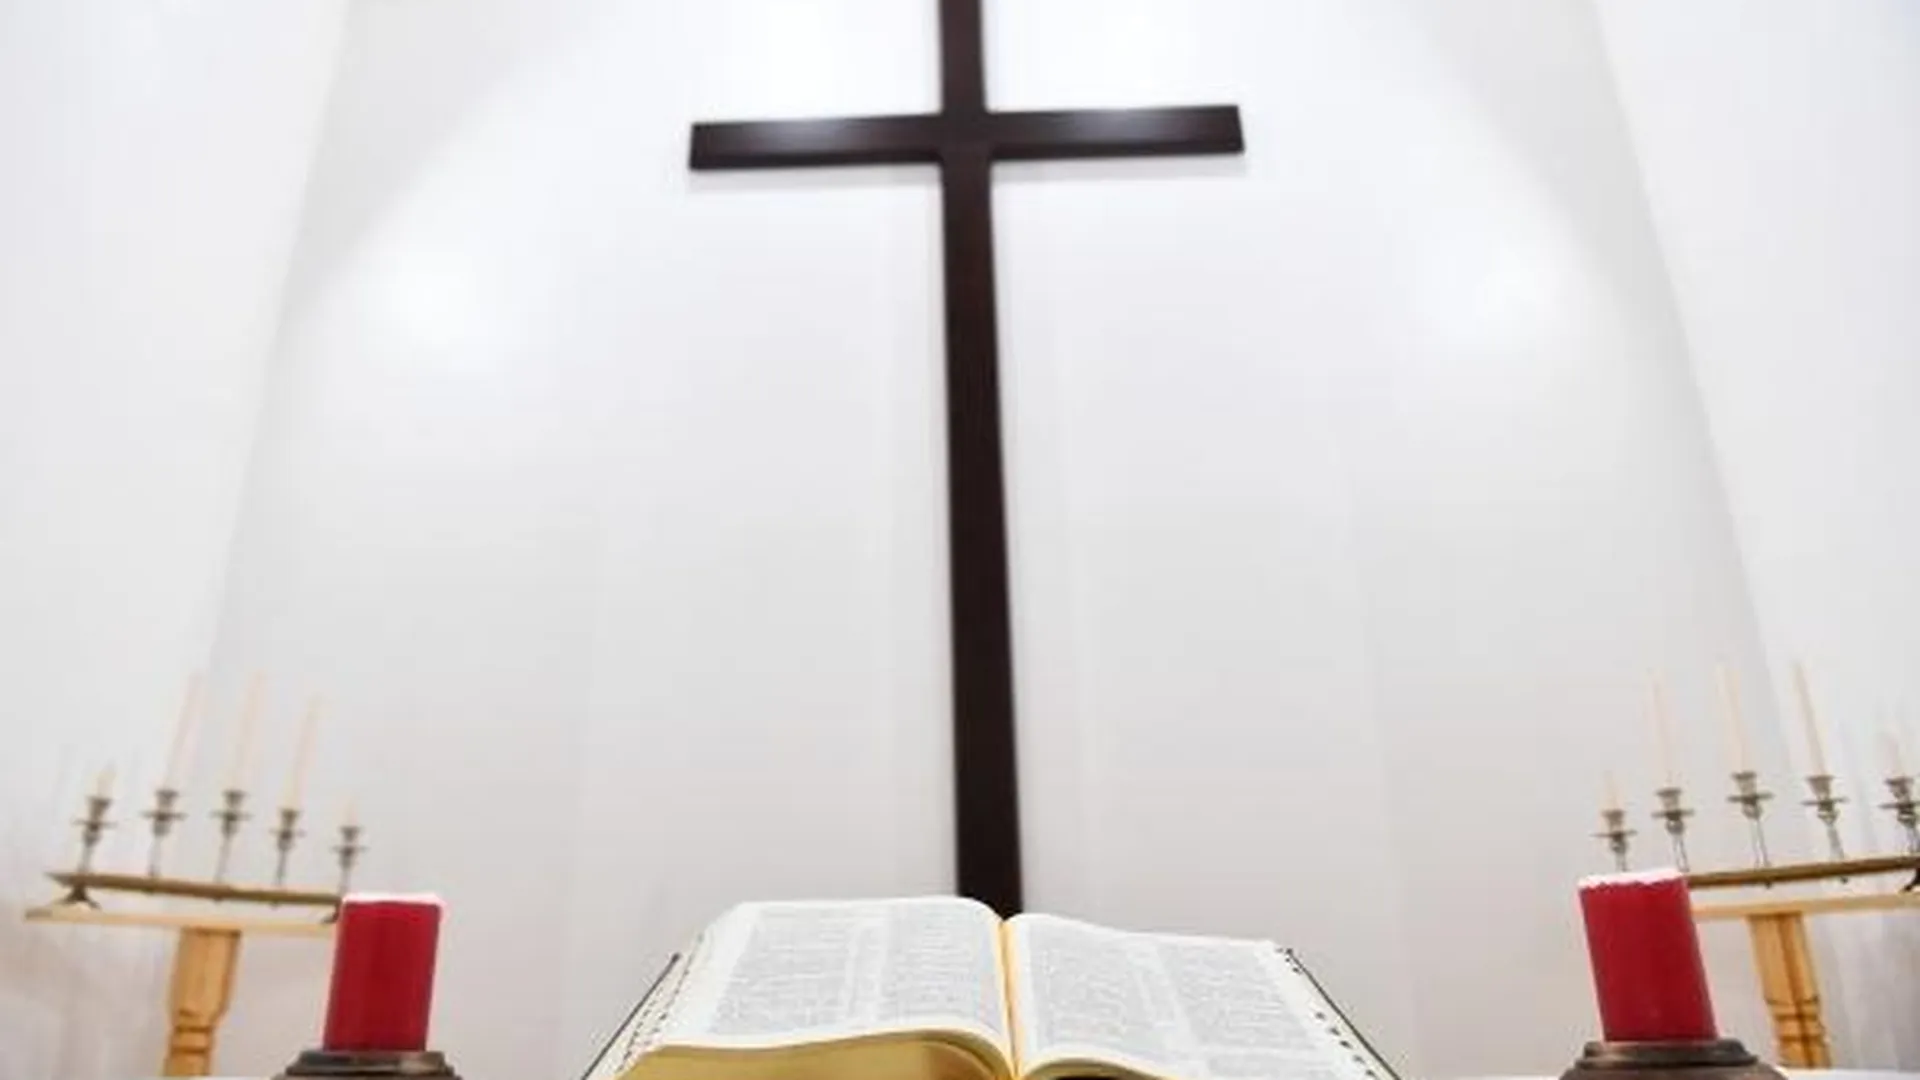 «Библия для детей» с гендерно-нейтральным Богом появилась в Германии